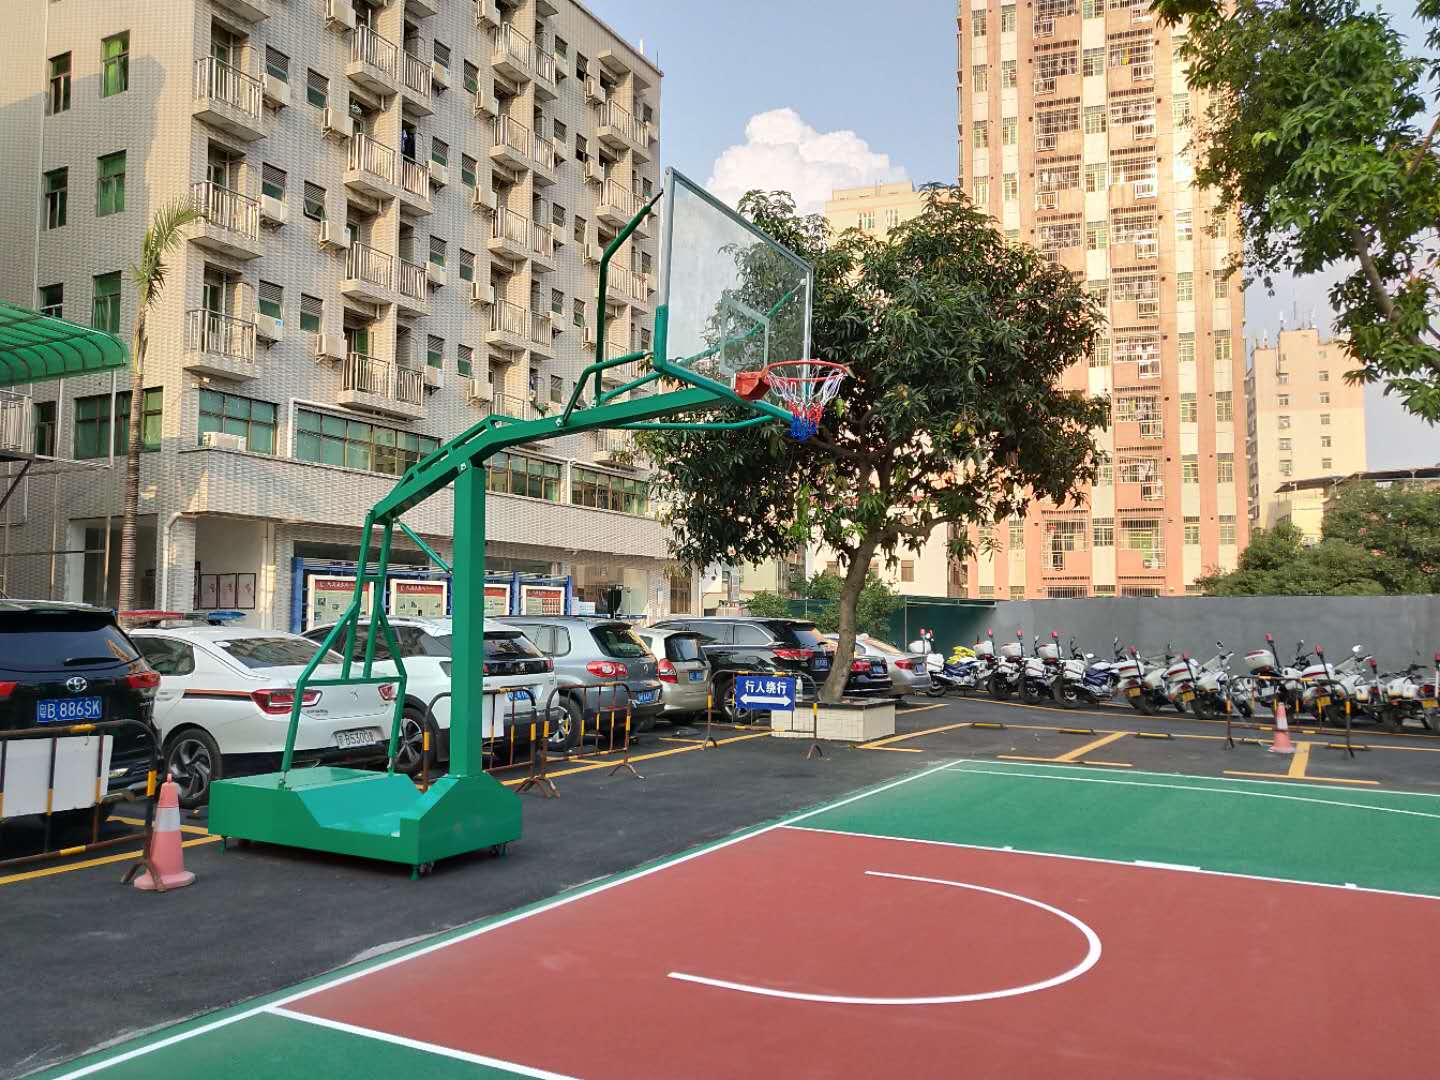 移动式篮球架海燕式篮球架箱式移动篮球架沙井篮球架价格 篮球架、球板、球框、球网5